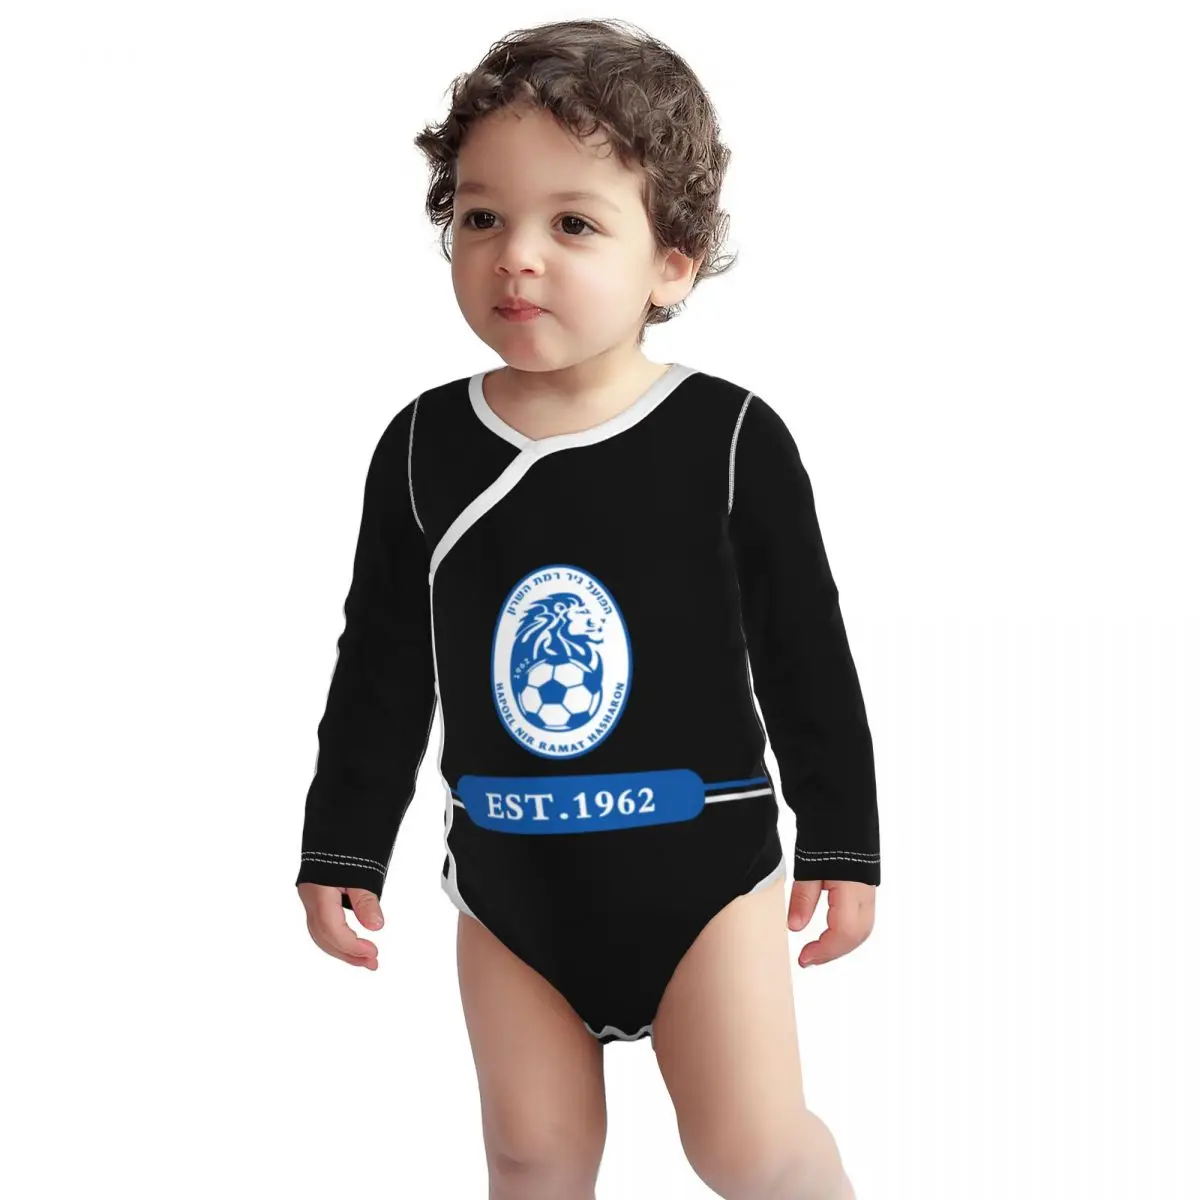 

Israel Hapoel Nir Ramat HaSharon Fc Unisex Toddlers and Babies' Soft Thermal Long Sleeve Onesies Bodysuits Baby Romper